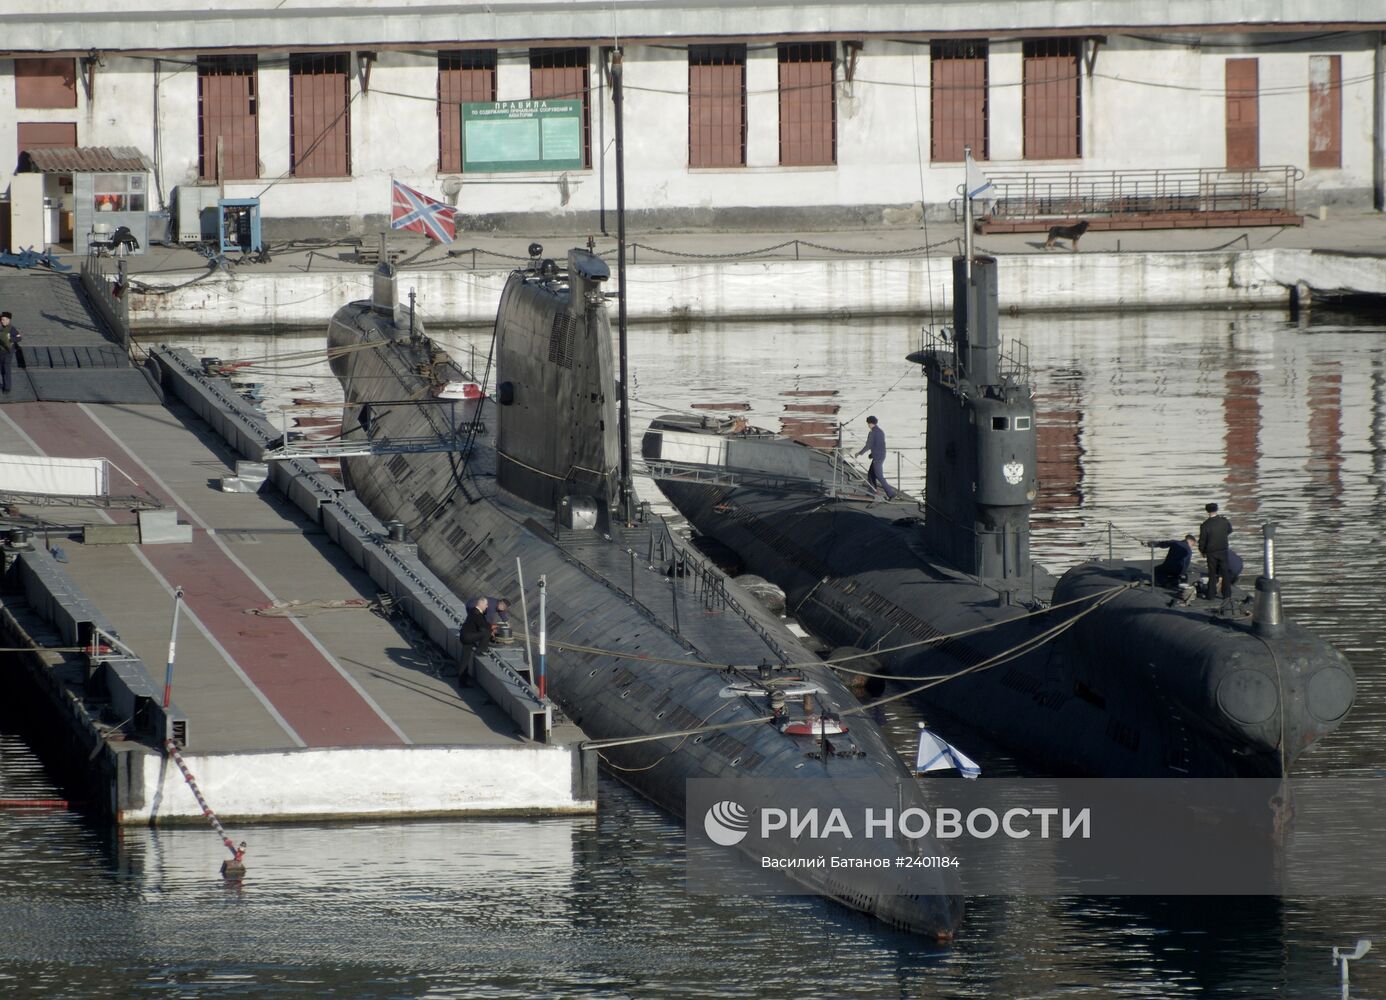 Андреевский флаг поднят на подлодке "Запорожье" ВМС Украины